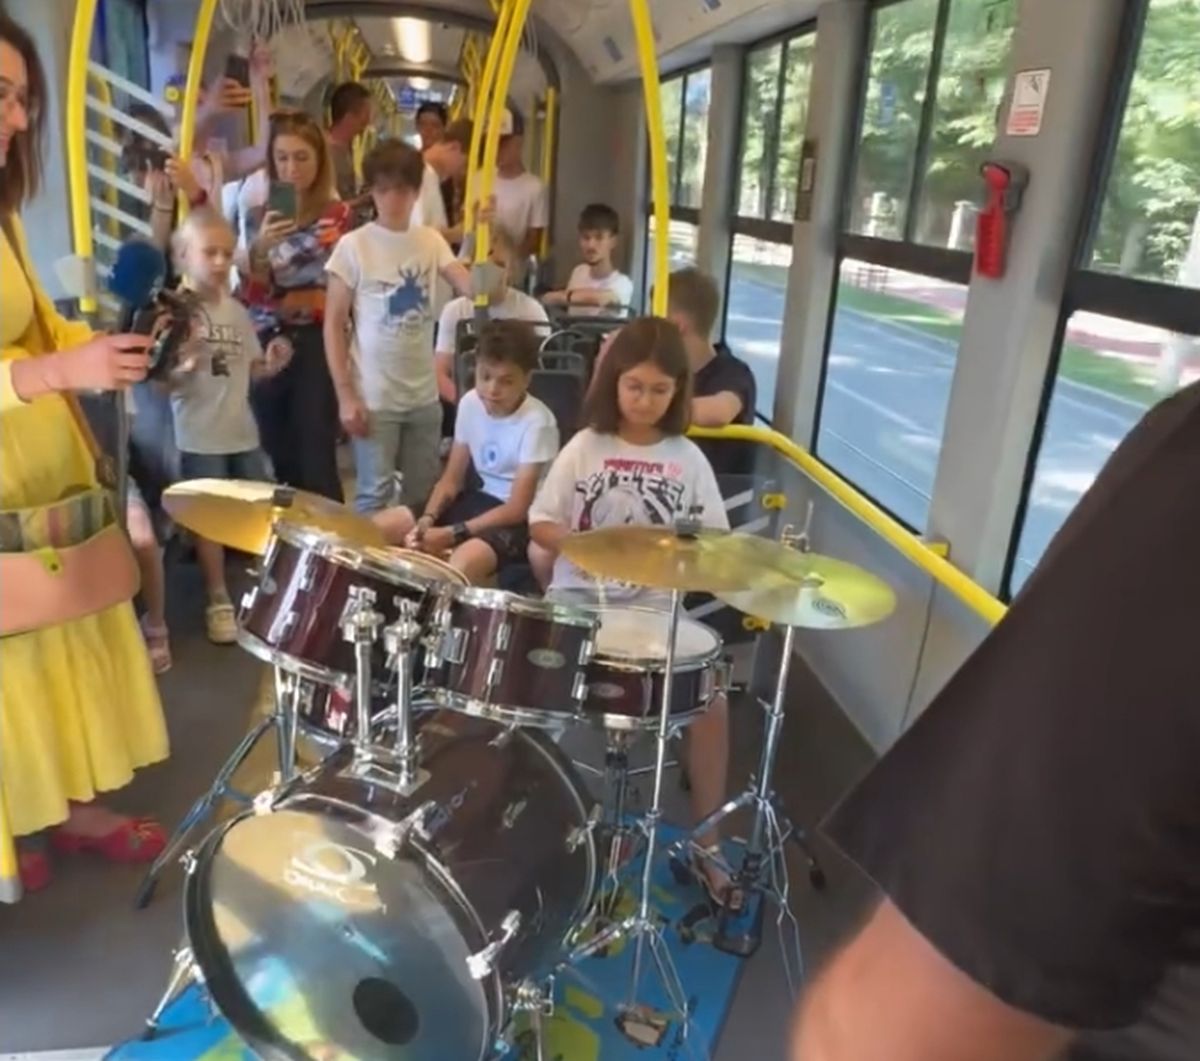 “Toboşariada” în tramvai. Spectacol inedit oferit de elevii unei școli de muzică din Iași | VIDEO